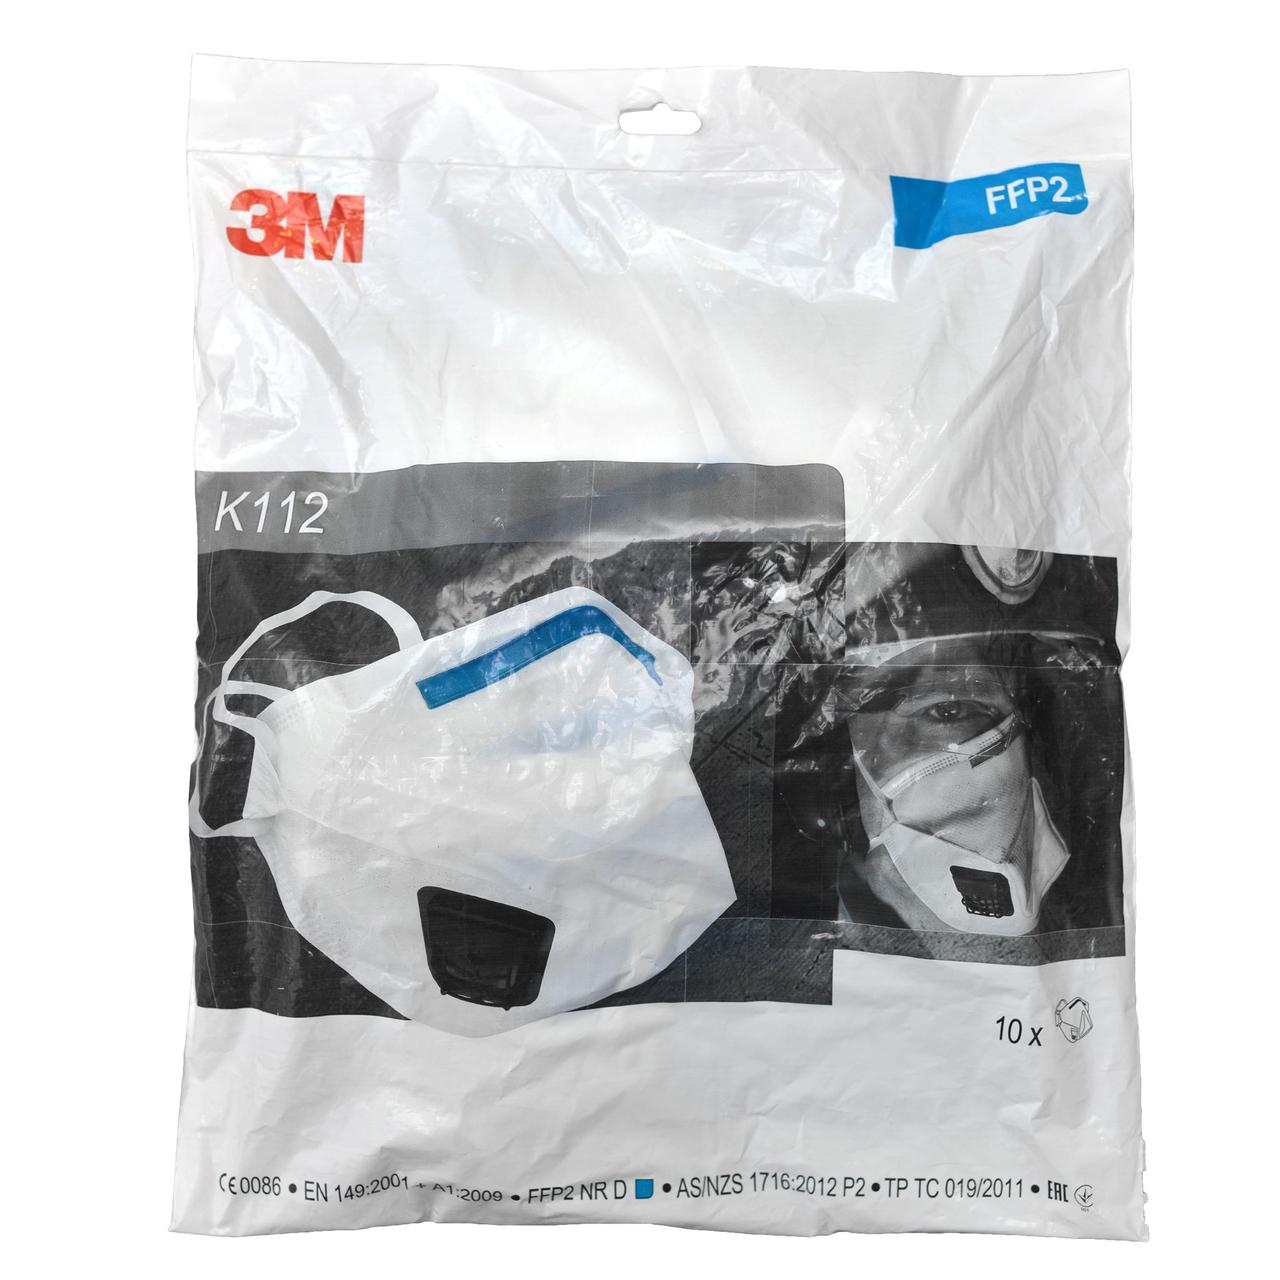 Респіратор маска 3M™ K112 (FFP2) висока фільтрація 10 штук в упаковці